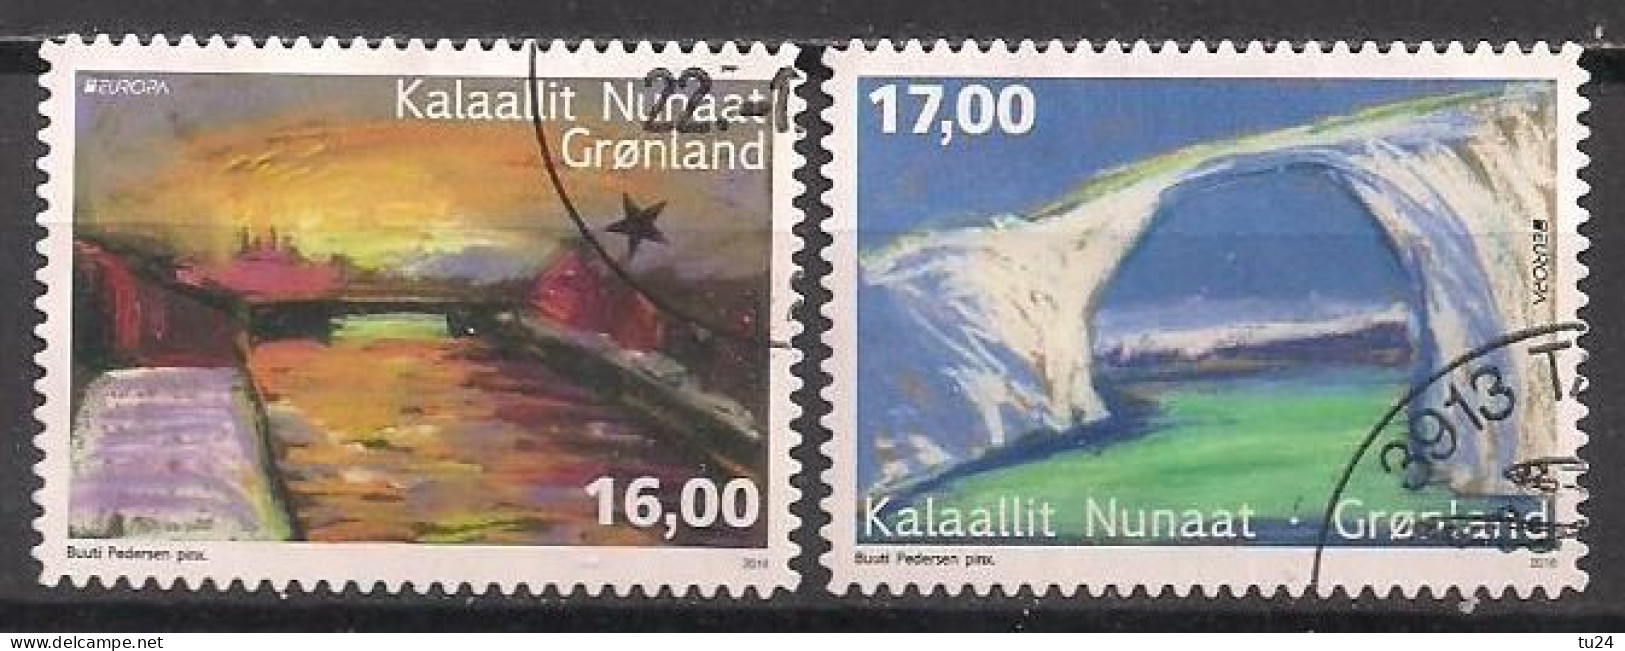 DK - Grönland  (2018)  Mi.Nr.  780 + 781  Gest. / Used  (4hd04) EUROPA   MH / From Booklet - Gebraucht